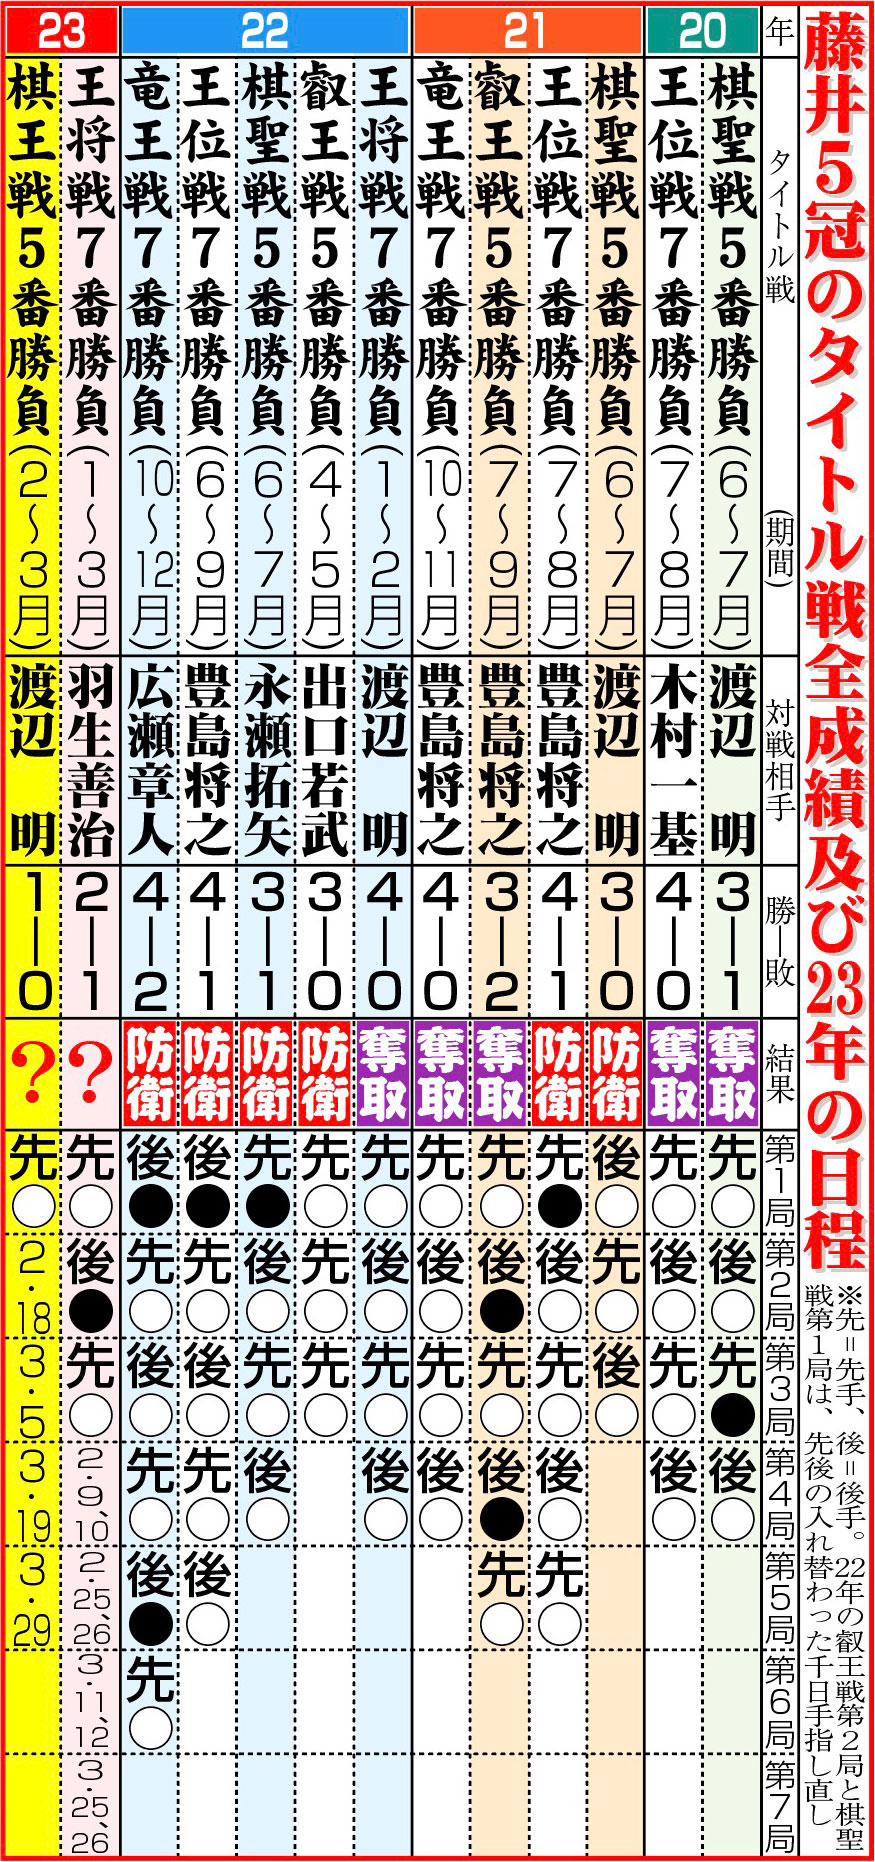 【イラスト】藤井5冠のタイトル戦全成績及び23年の日程